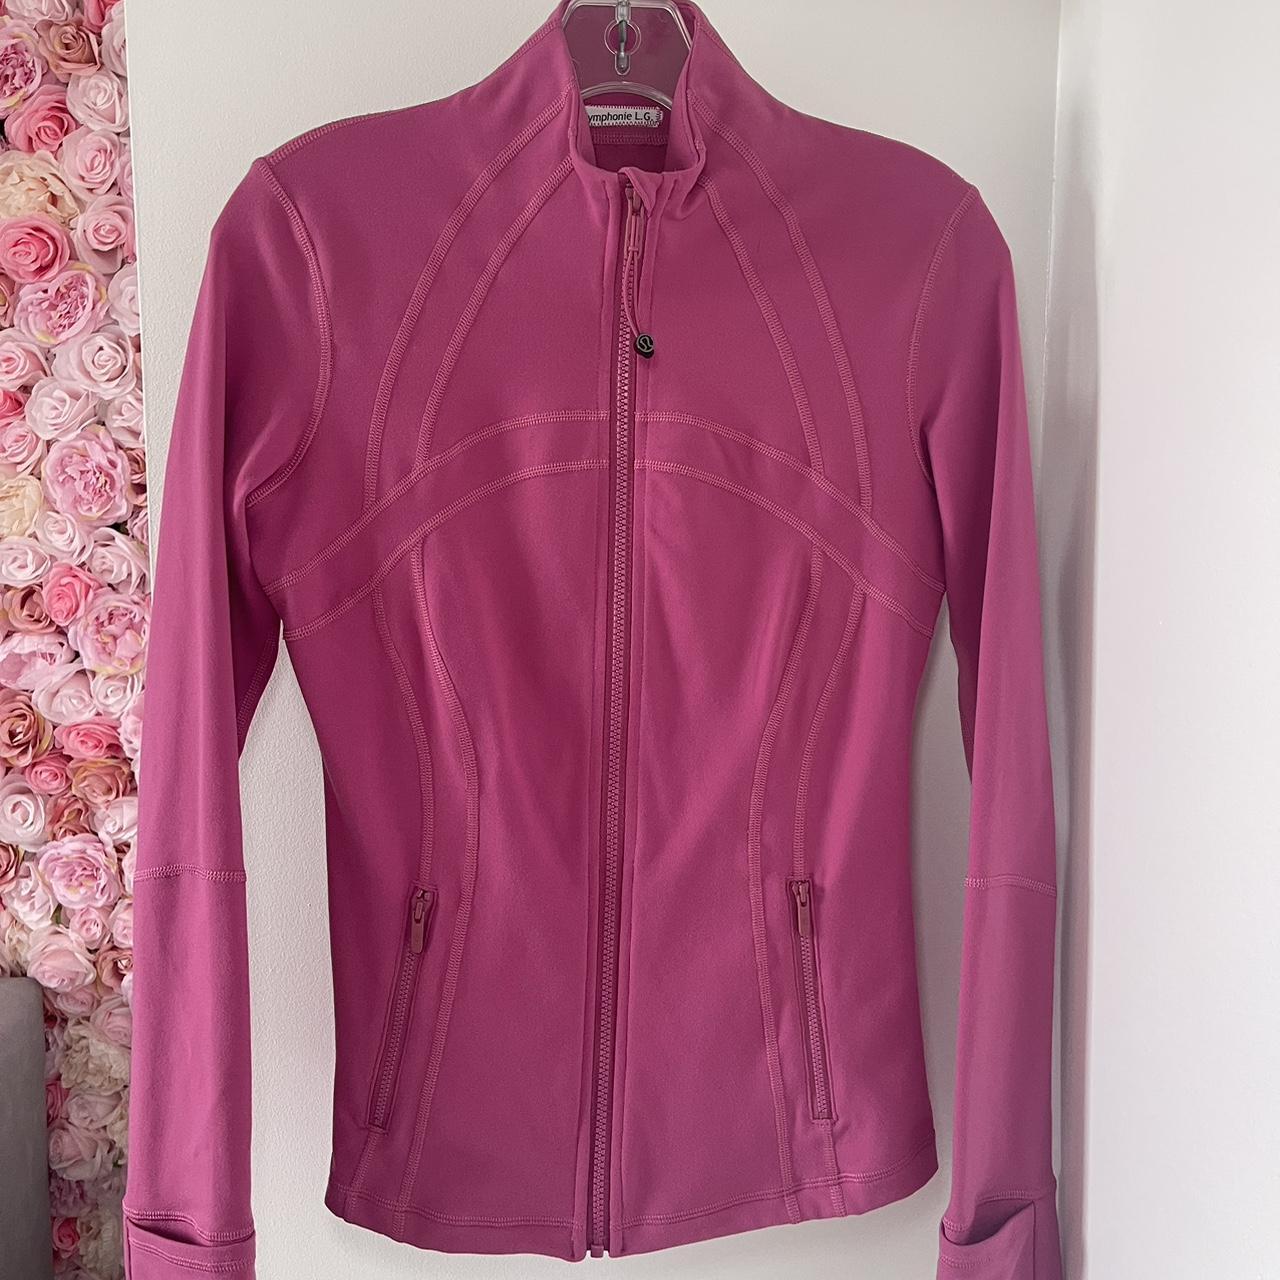 lululemon defined jacket nulu color: pink - Depop